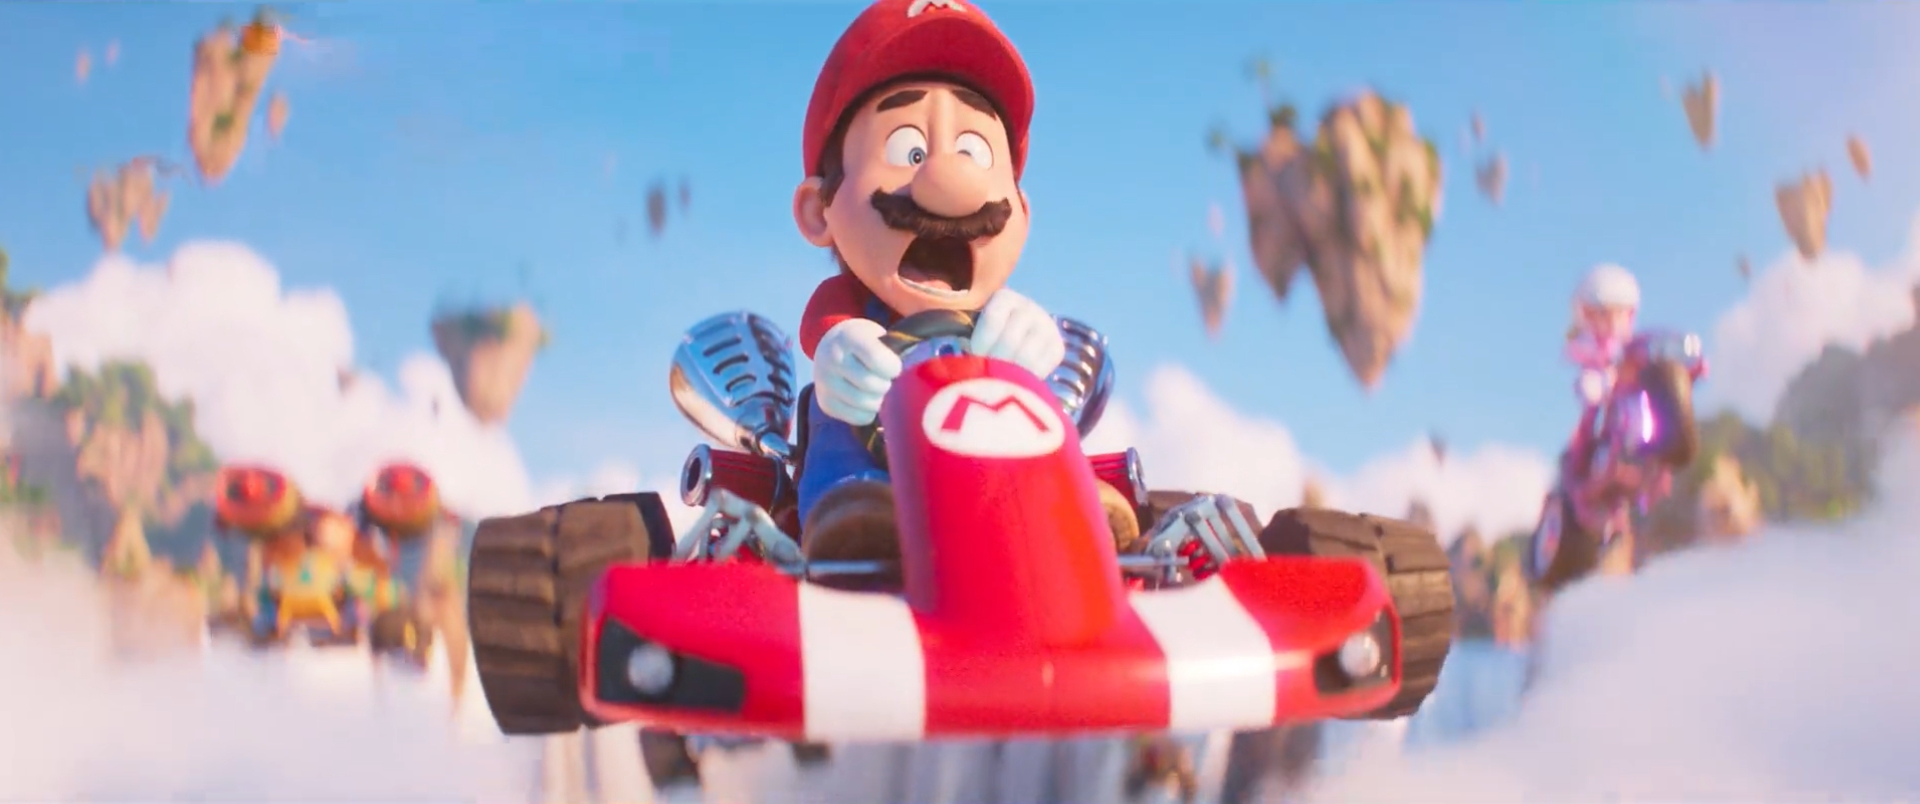 I'm Not Proud of It”- Super Mario Bros. Movie Actor Chris Pratt